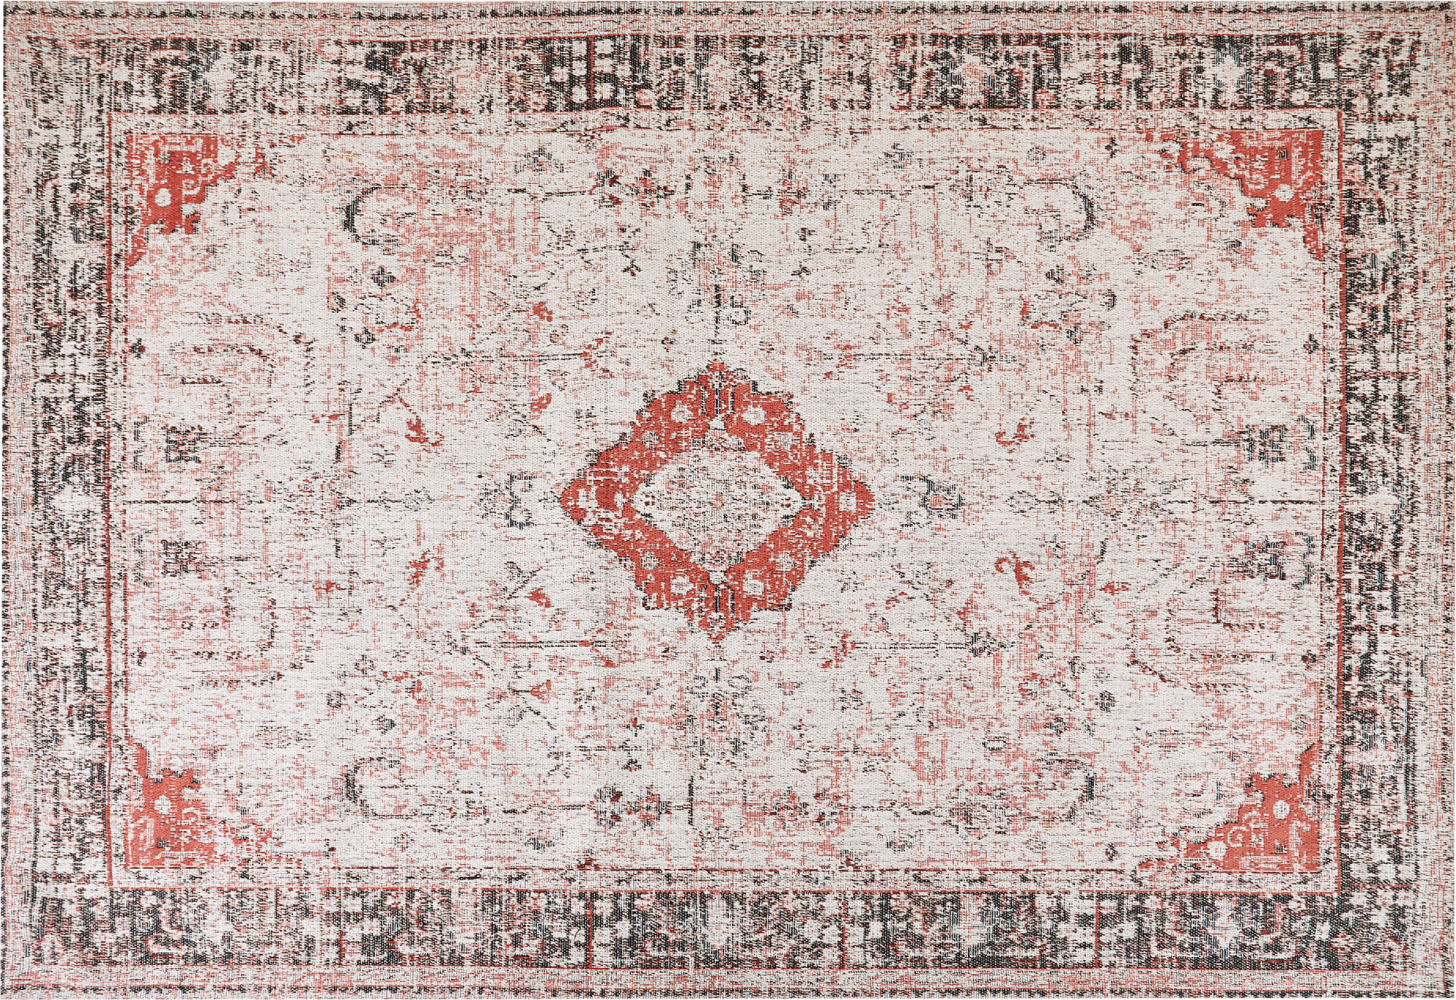 Teppich Baumwolle rot beige 160 x 230 cm orientalisches Muster Kurzflor ATTERA Bild 1